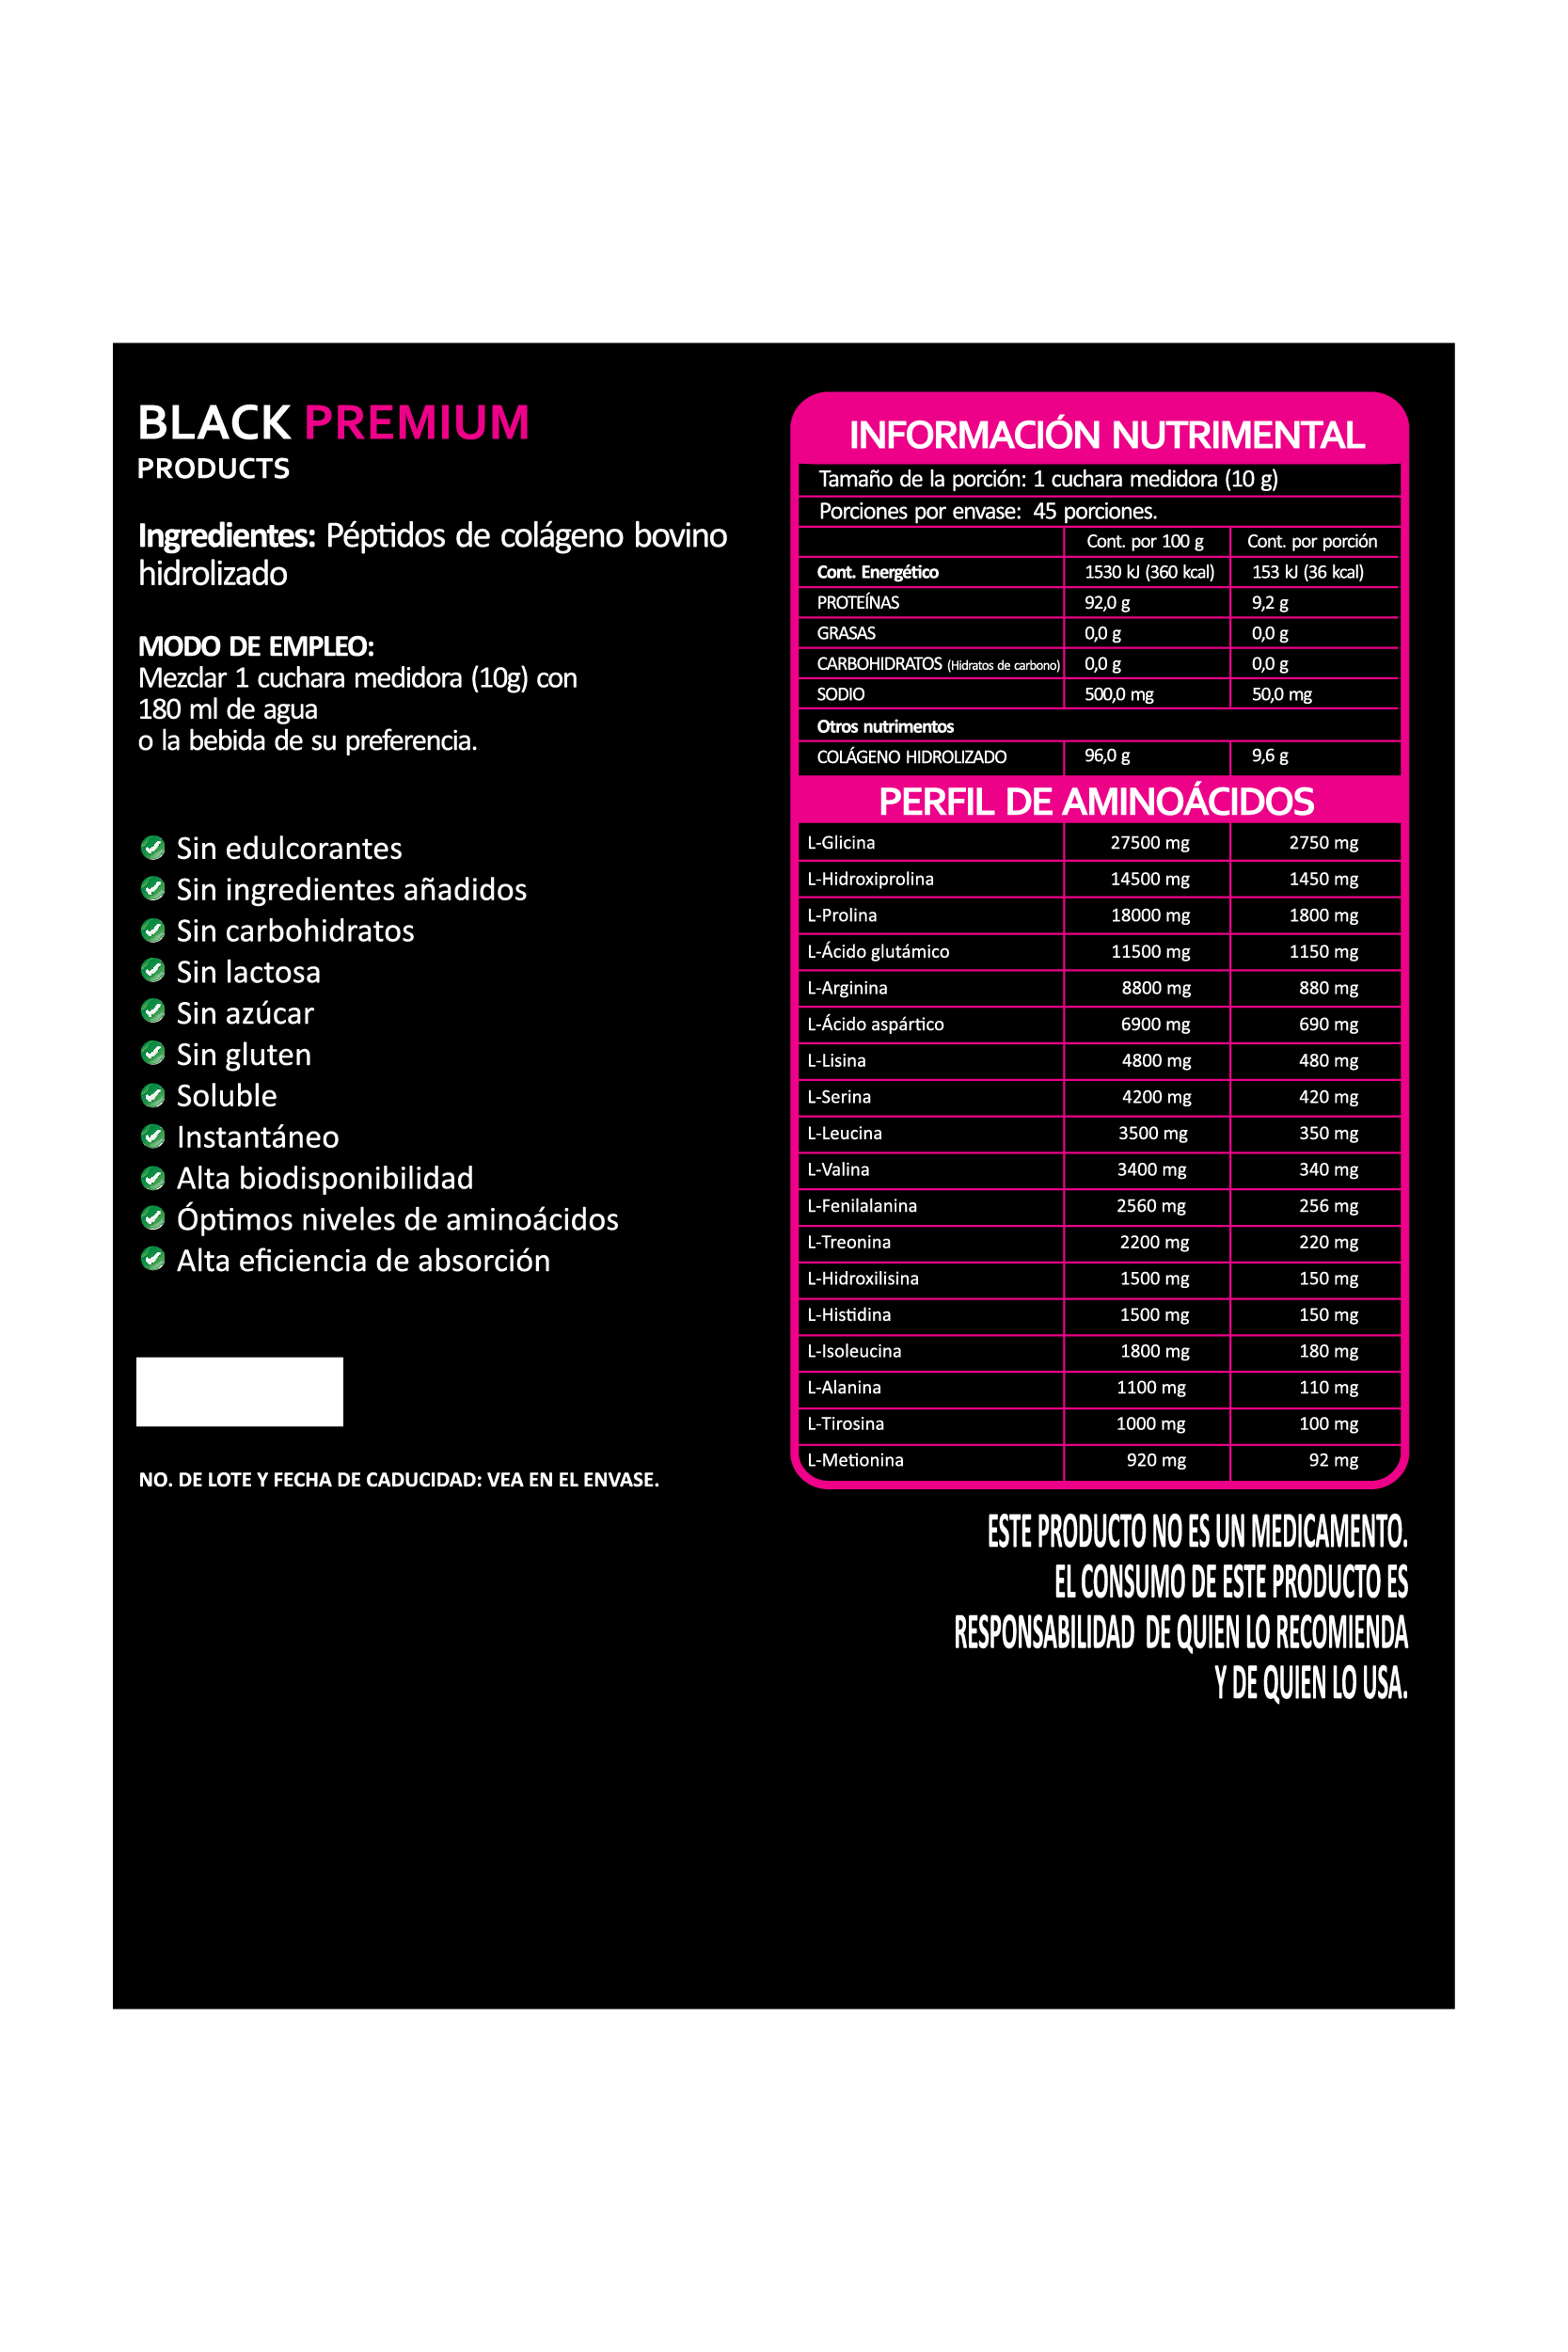 Black Premium | Suplementos Alimenticios en Polvo | Proteínas | Bundle | Colágeno, Proteína, Creatina, Aminoácidos BCAAS 